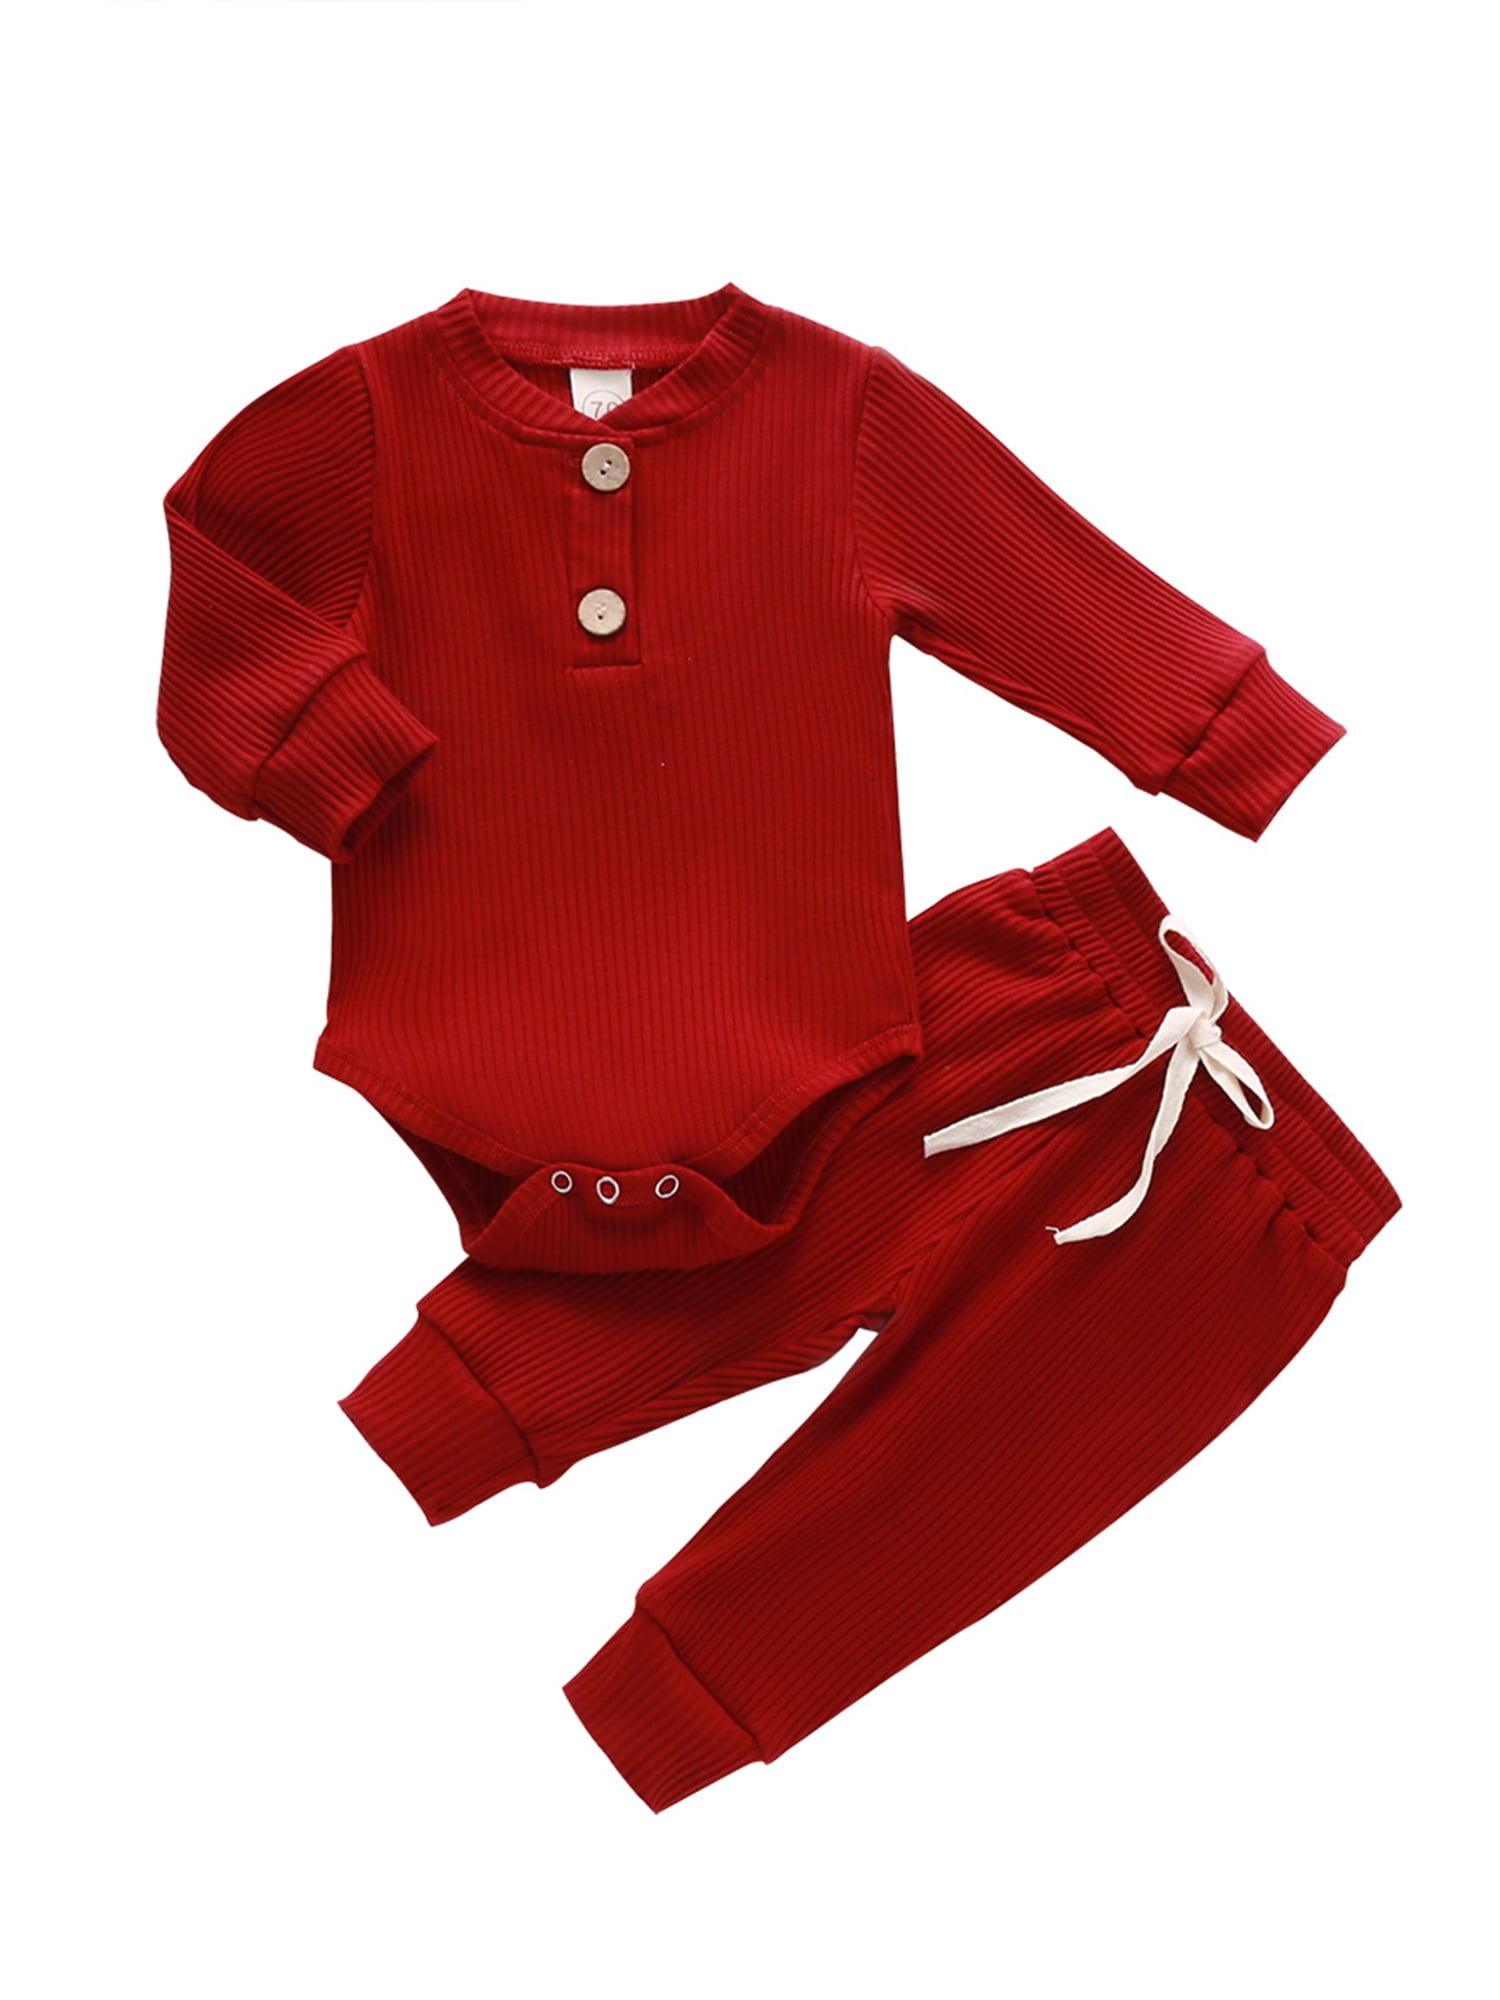 Calsunbaby Infant Baby Girl Boy Plain Color Long Sleeve Bodysuit Cotton Jumpsuit Clothes 